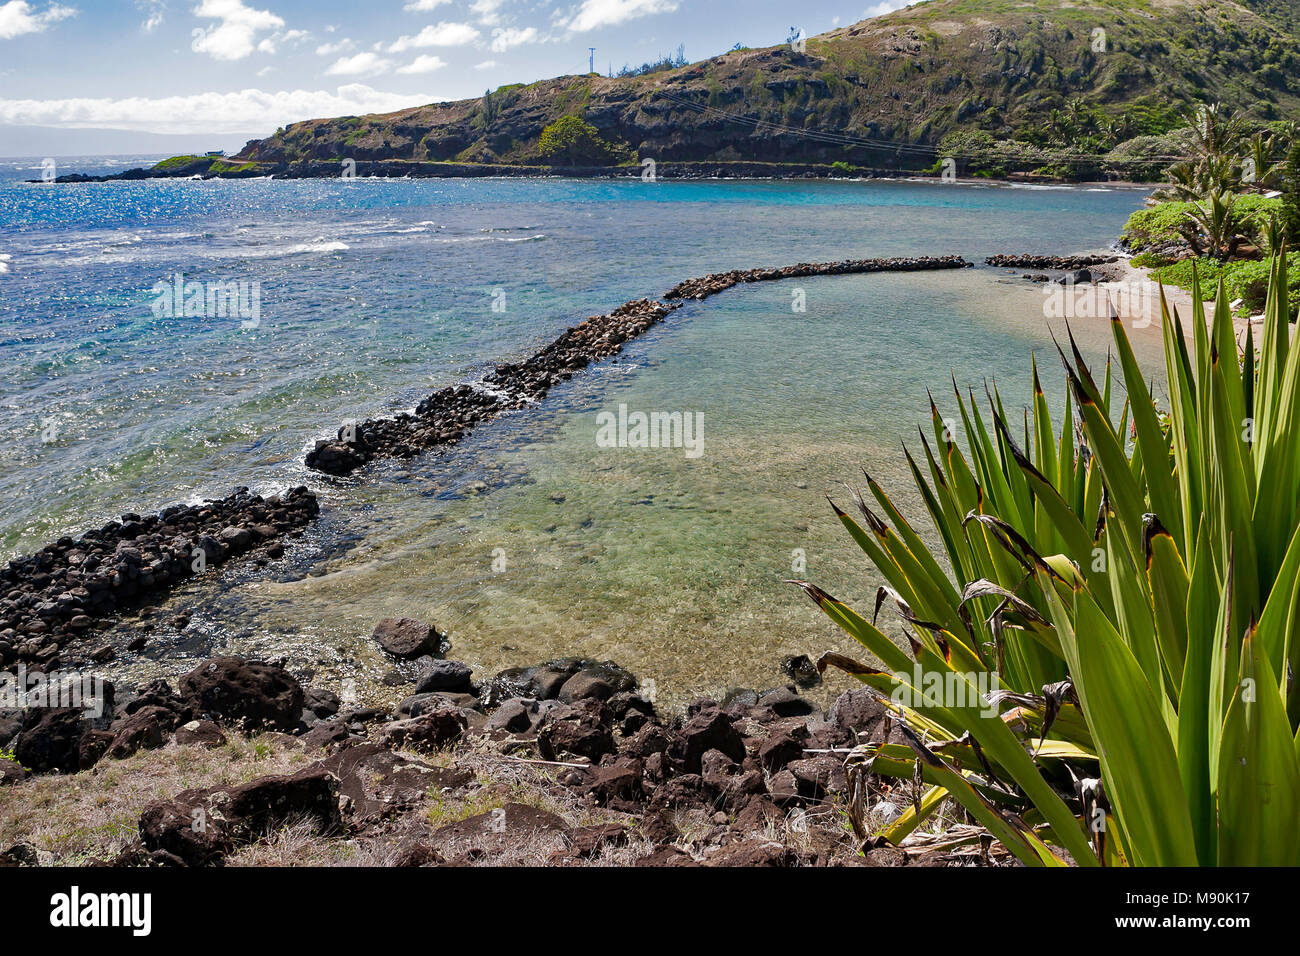 Molokai hat viele gut erhaltene Hawaiian Fischteiche 20 Meilen entlang der South Shore, die meisten 700-800 Jahren erbaut wurden. Dieses auf der southea befindet. Stockfoto